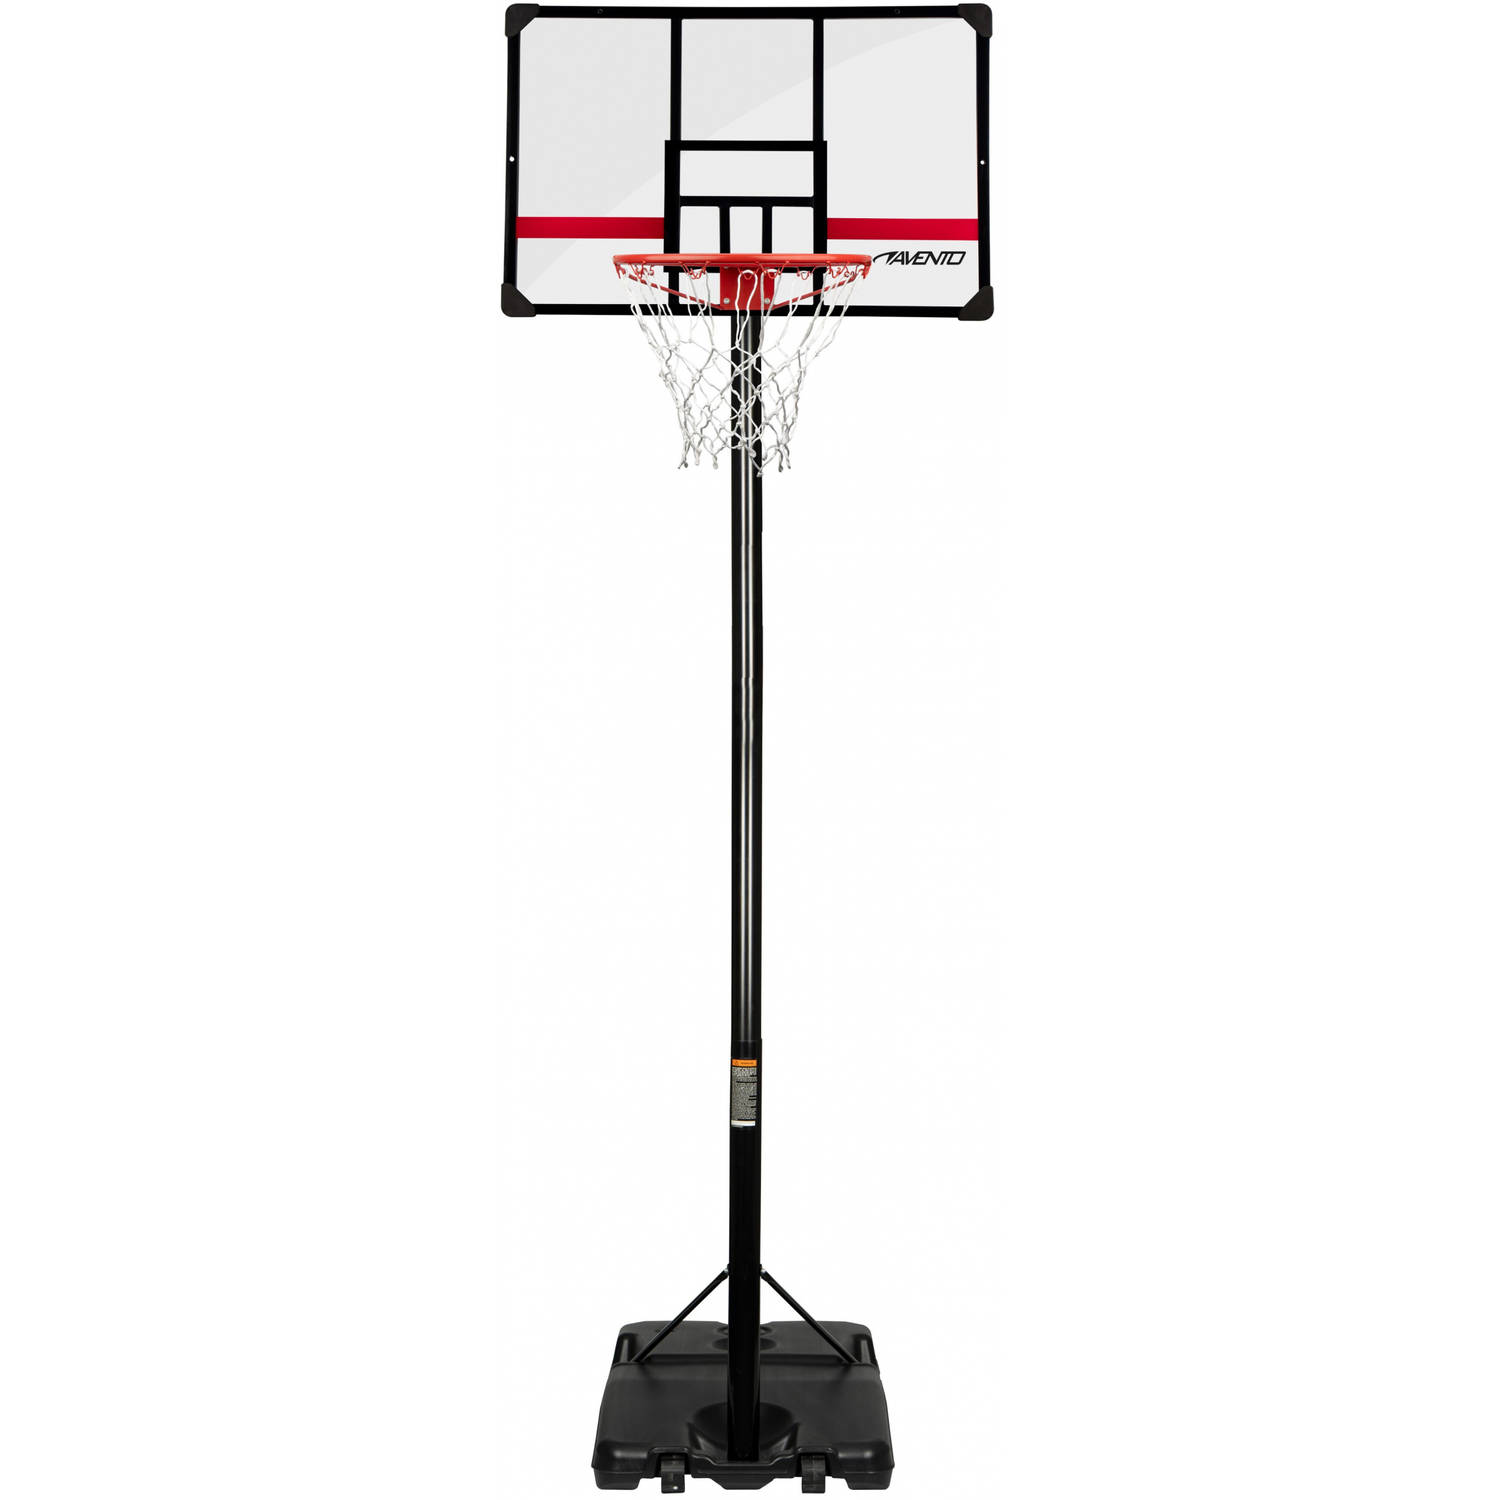 Avento basketbalpaal Legendary 225 305 cm RVS zwart 6 delig